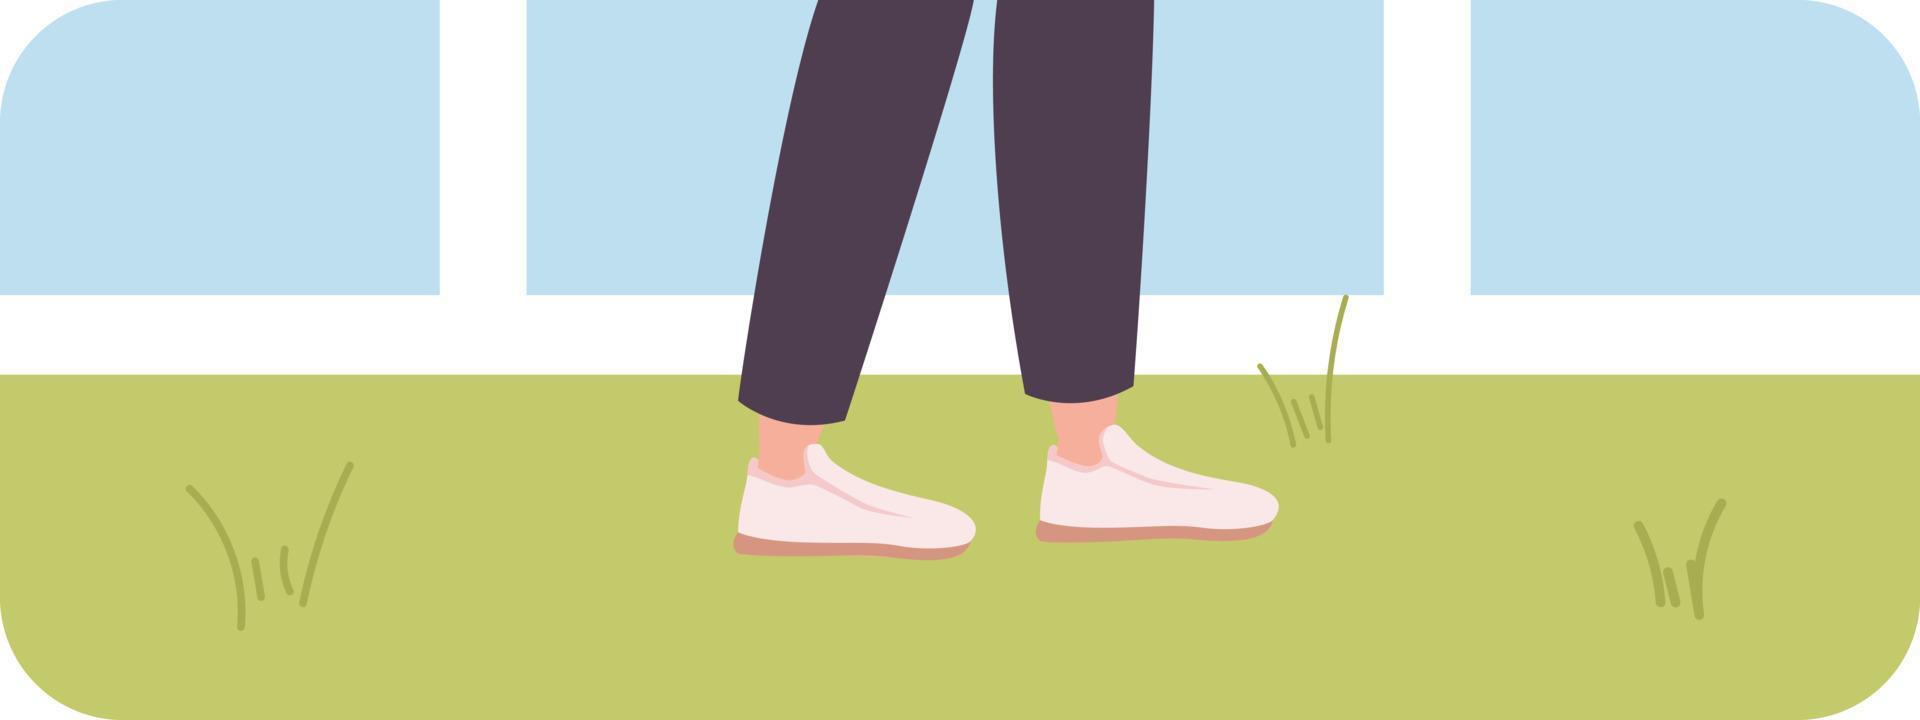 gående fötter i gymnastikskor på gräs platt begrepp vektor illustration. blixt meddelande med platt 2d karaktär på tecknad serie isolerat bakgrund. färgrik redigerbar bild för mobil, hemsida ux design